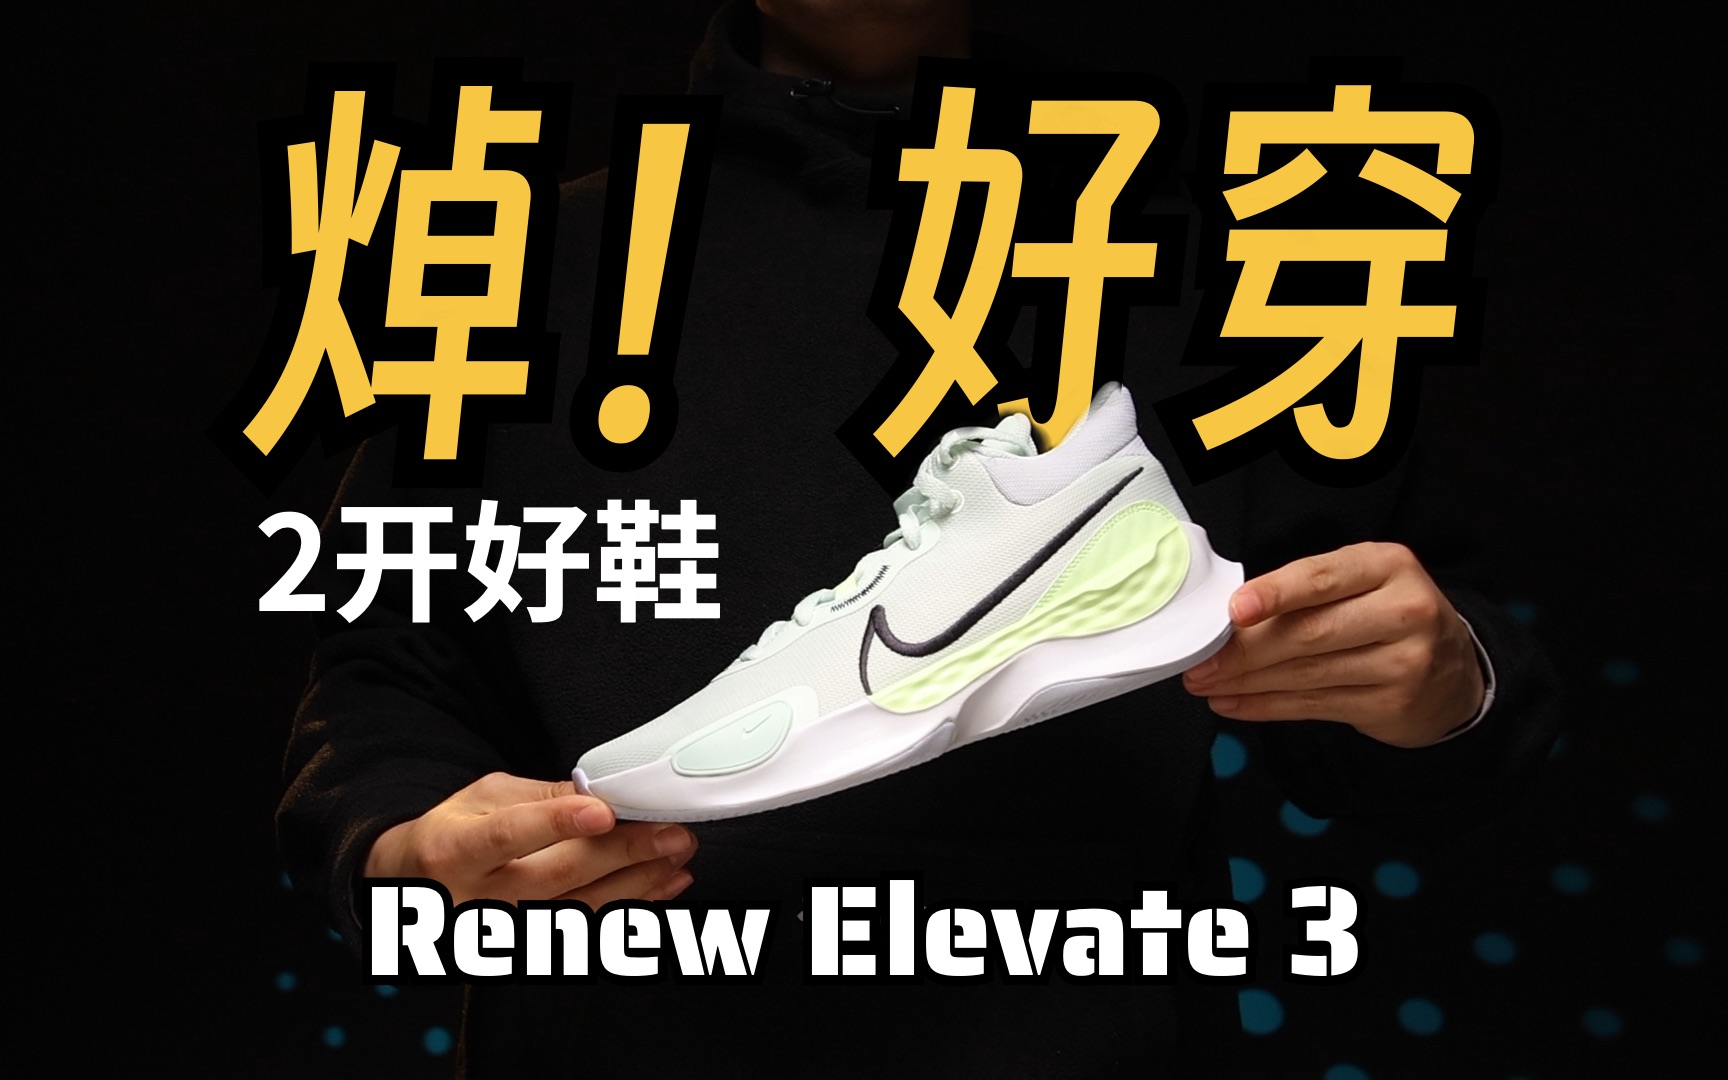 nike精髓在这❗️二开HD17平替❗️超级好穿的Renew Elevate 3实战测评：nike运动鞋的精髓体现